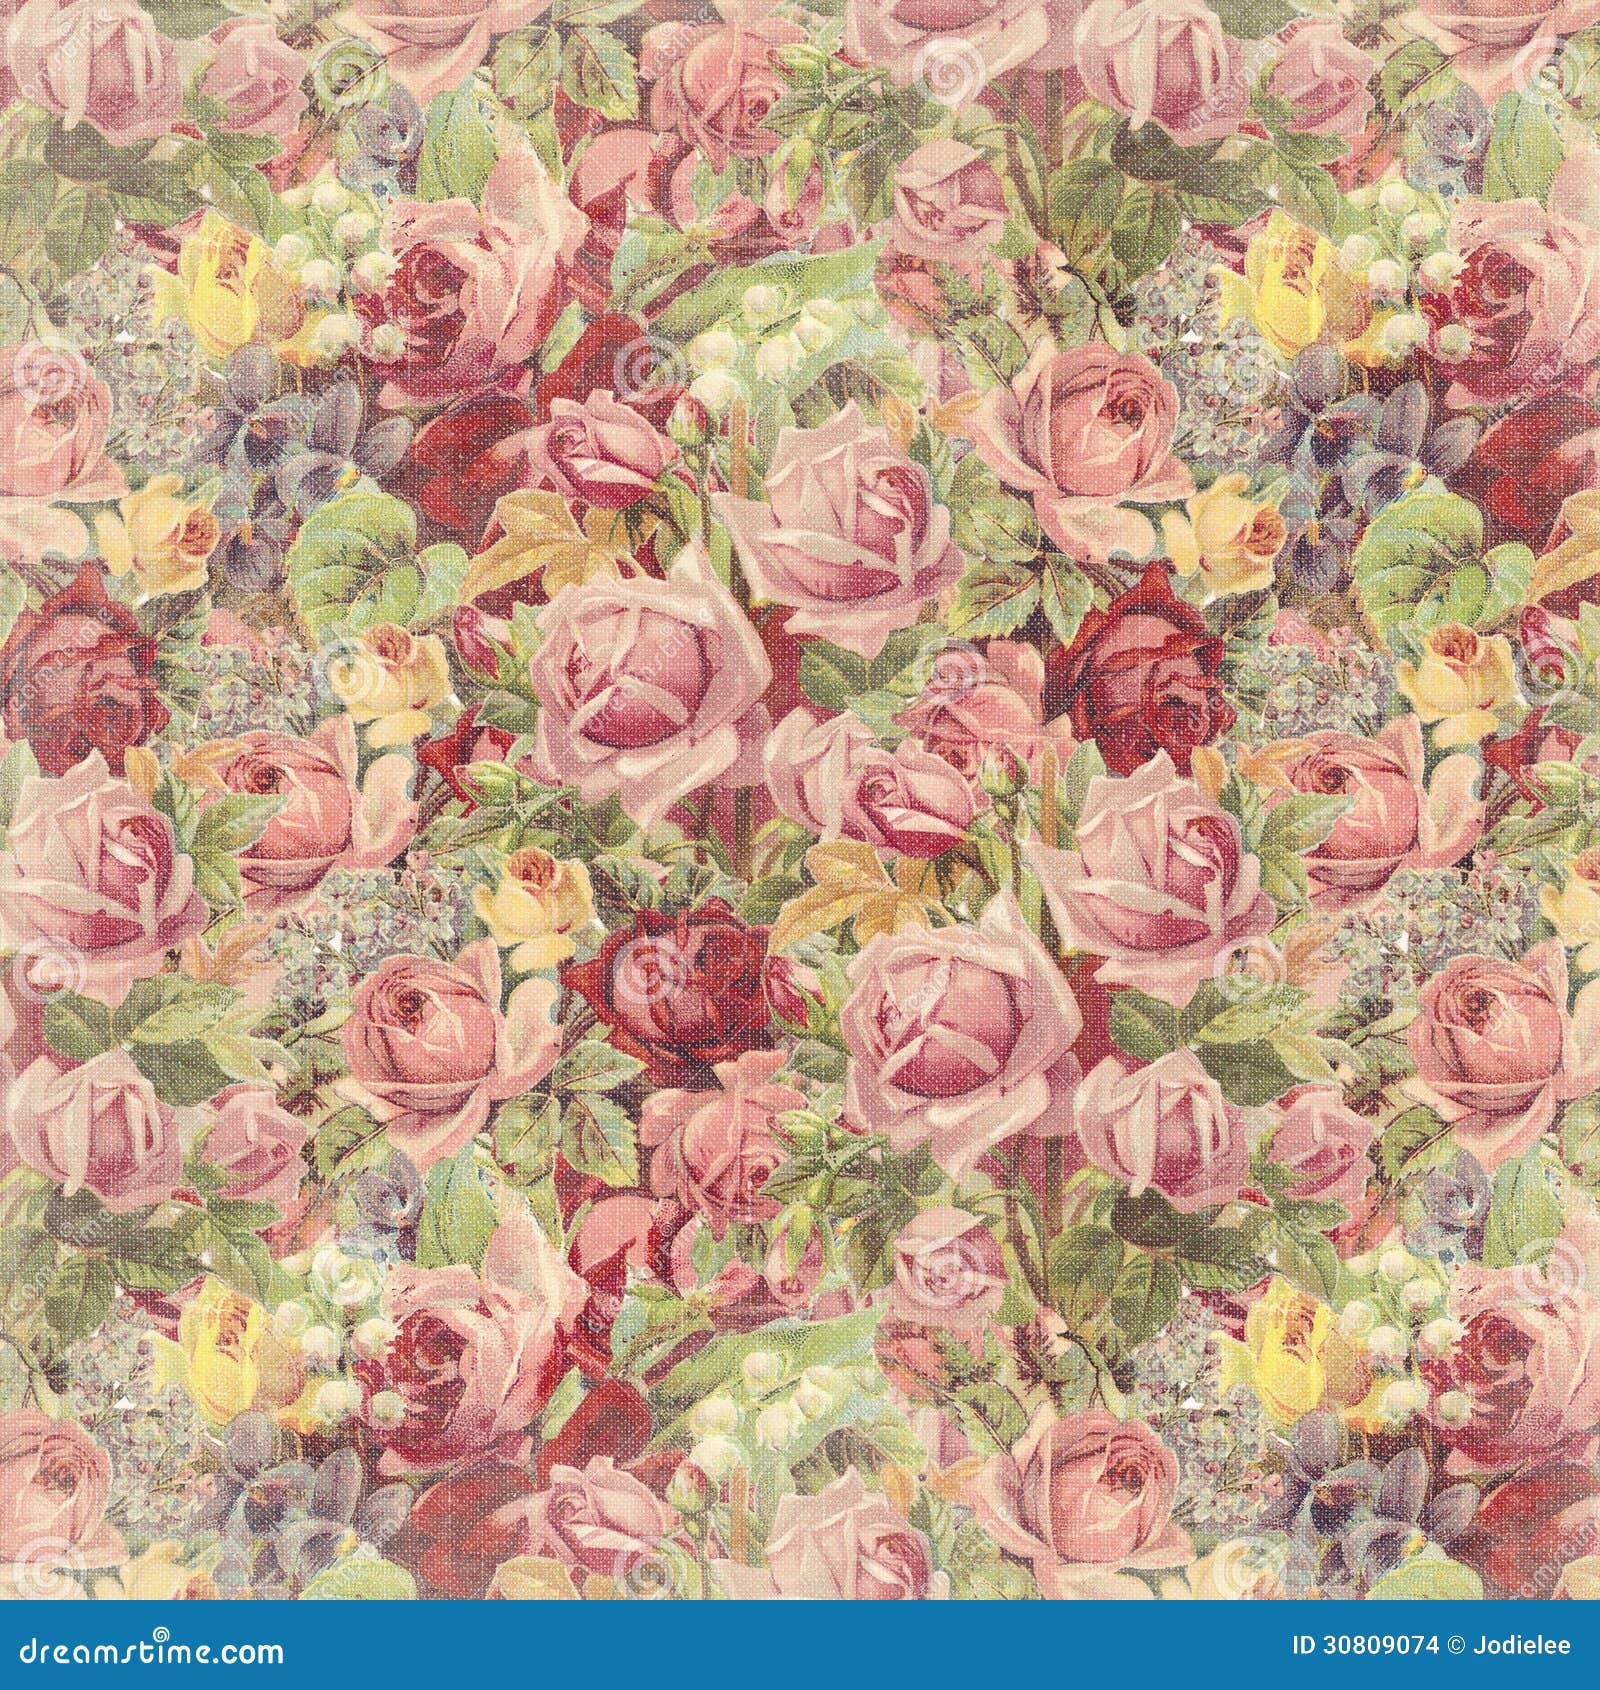 Vintage Rose Background Stock Images - Image: 30809074